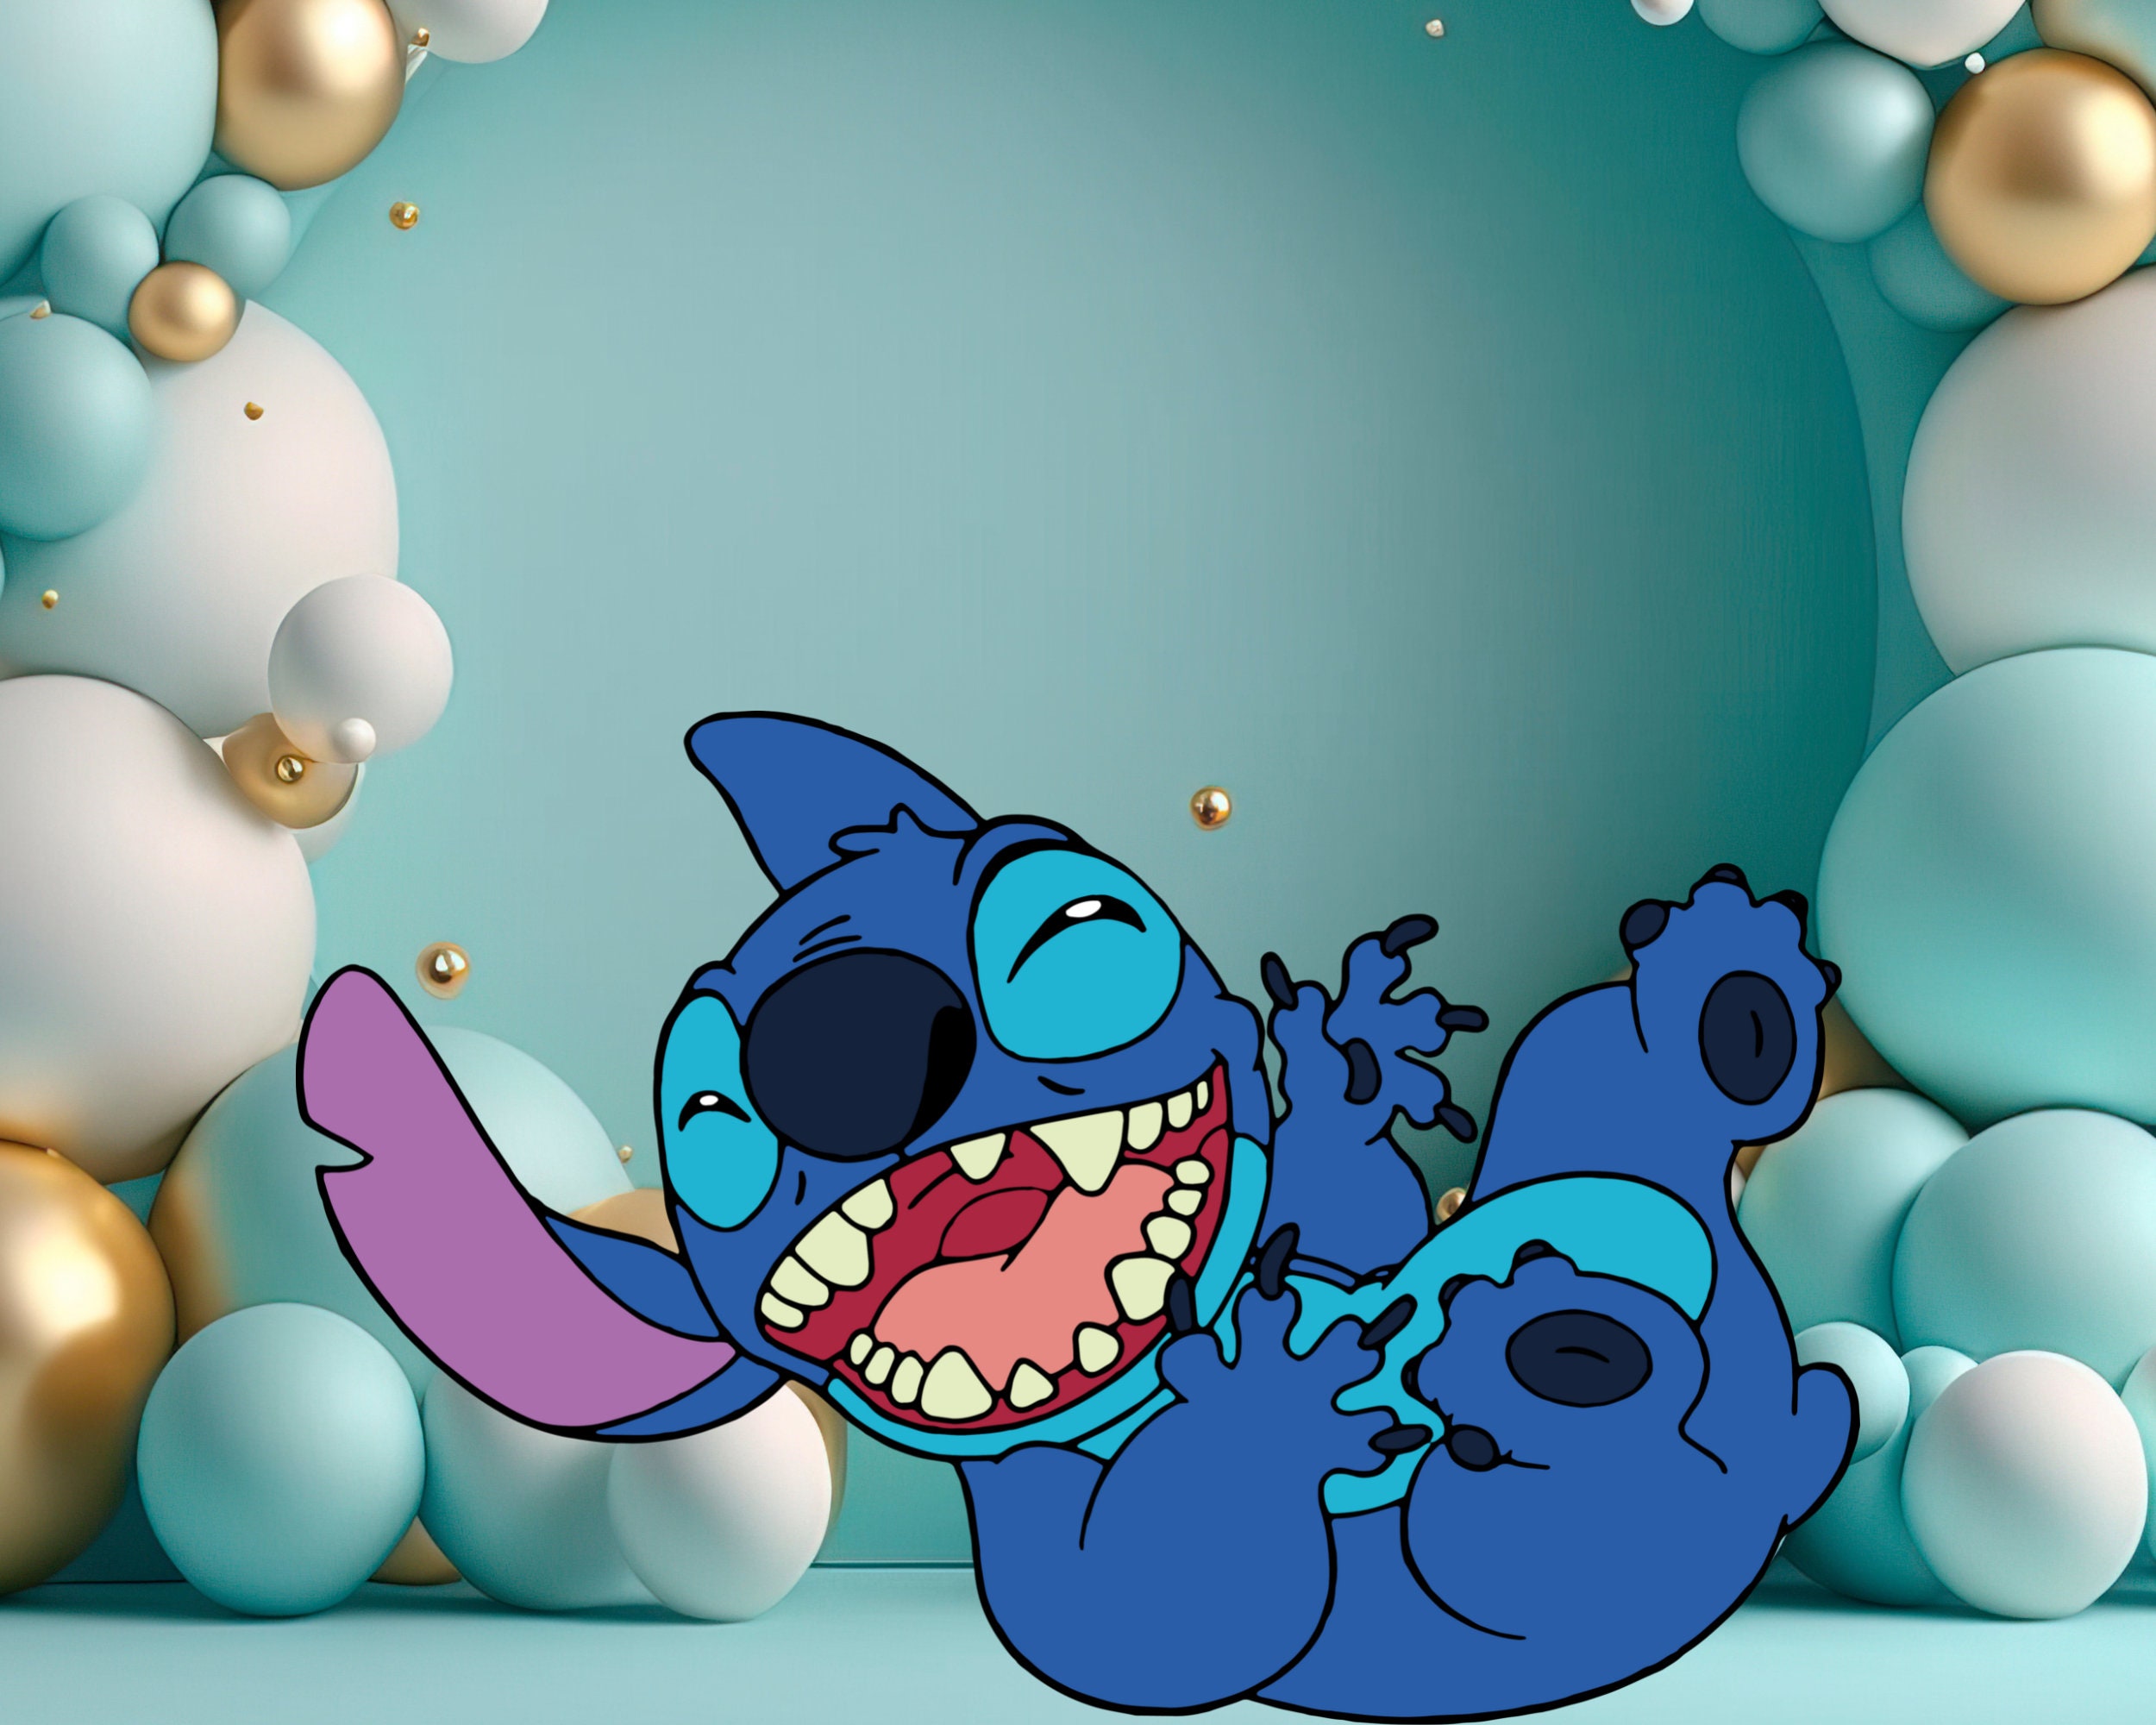 Lilo and Stitch Balloons 6pcs - Microplush